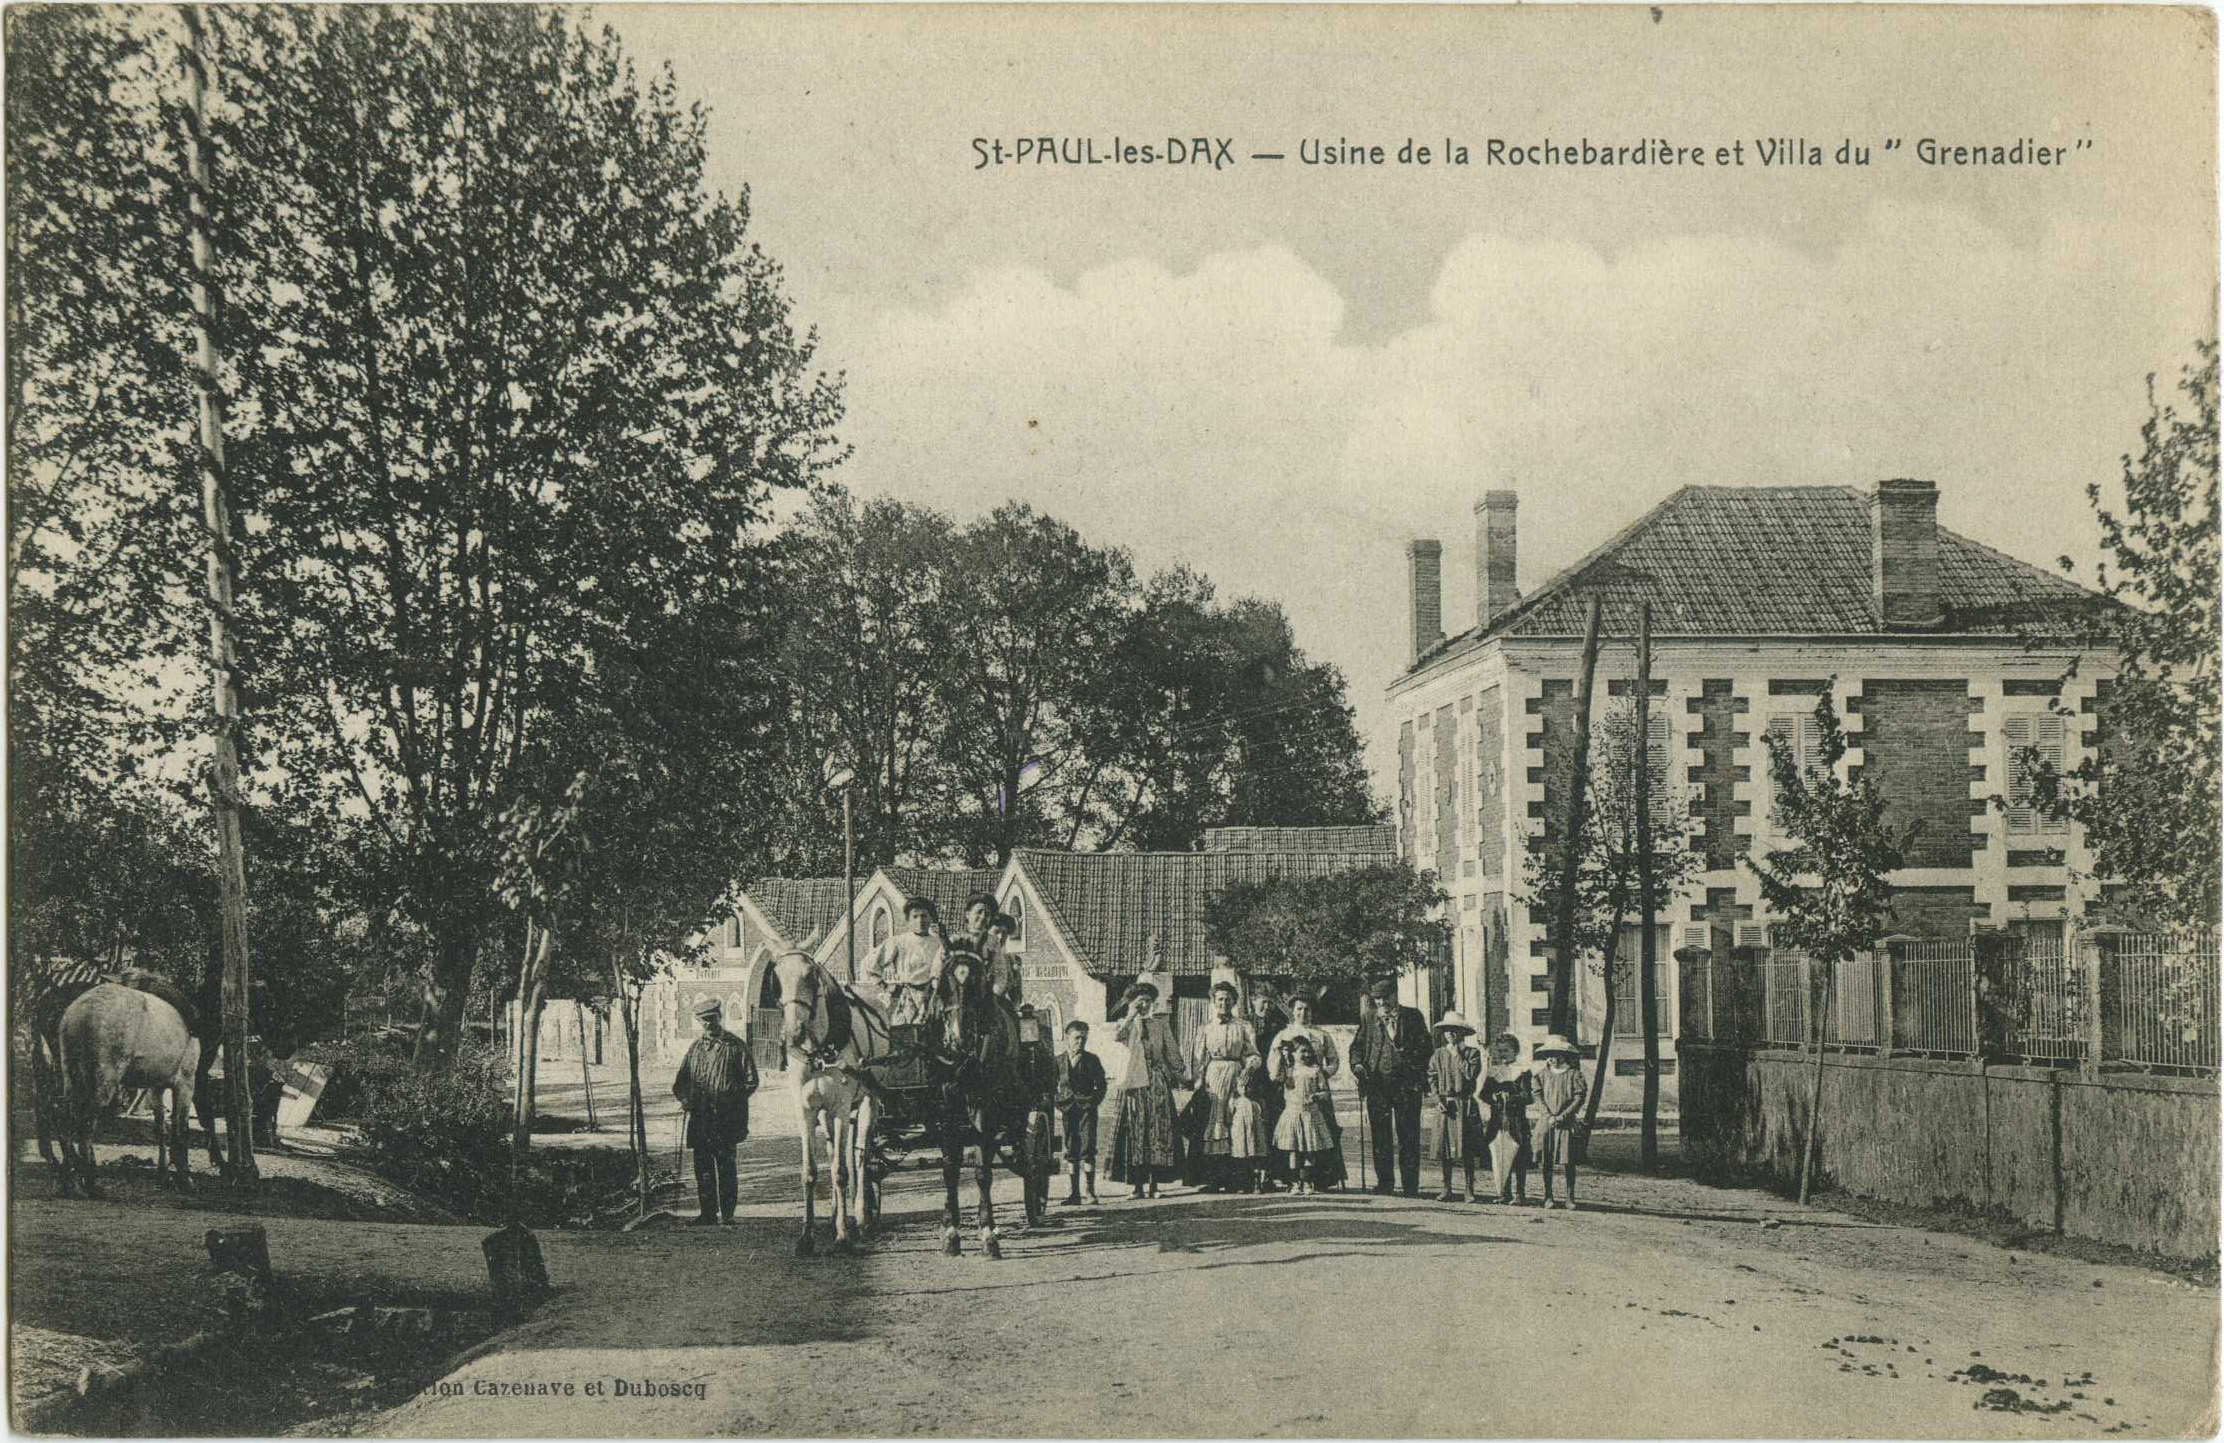 Saint-Paul-lès-Dax - Usine de la Rochebardière et Villa du " Grenadier "